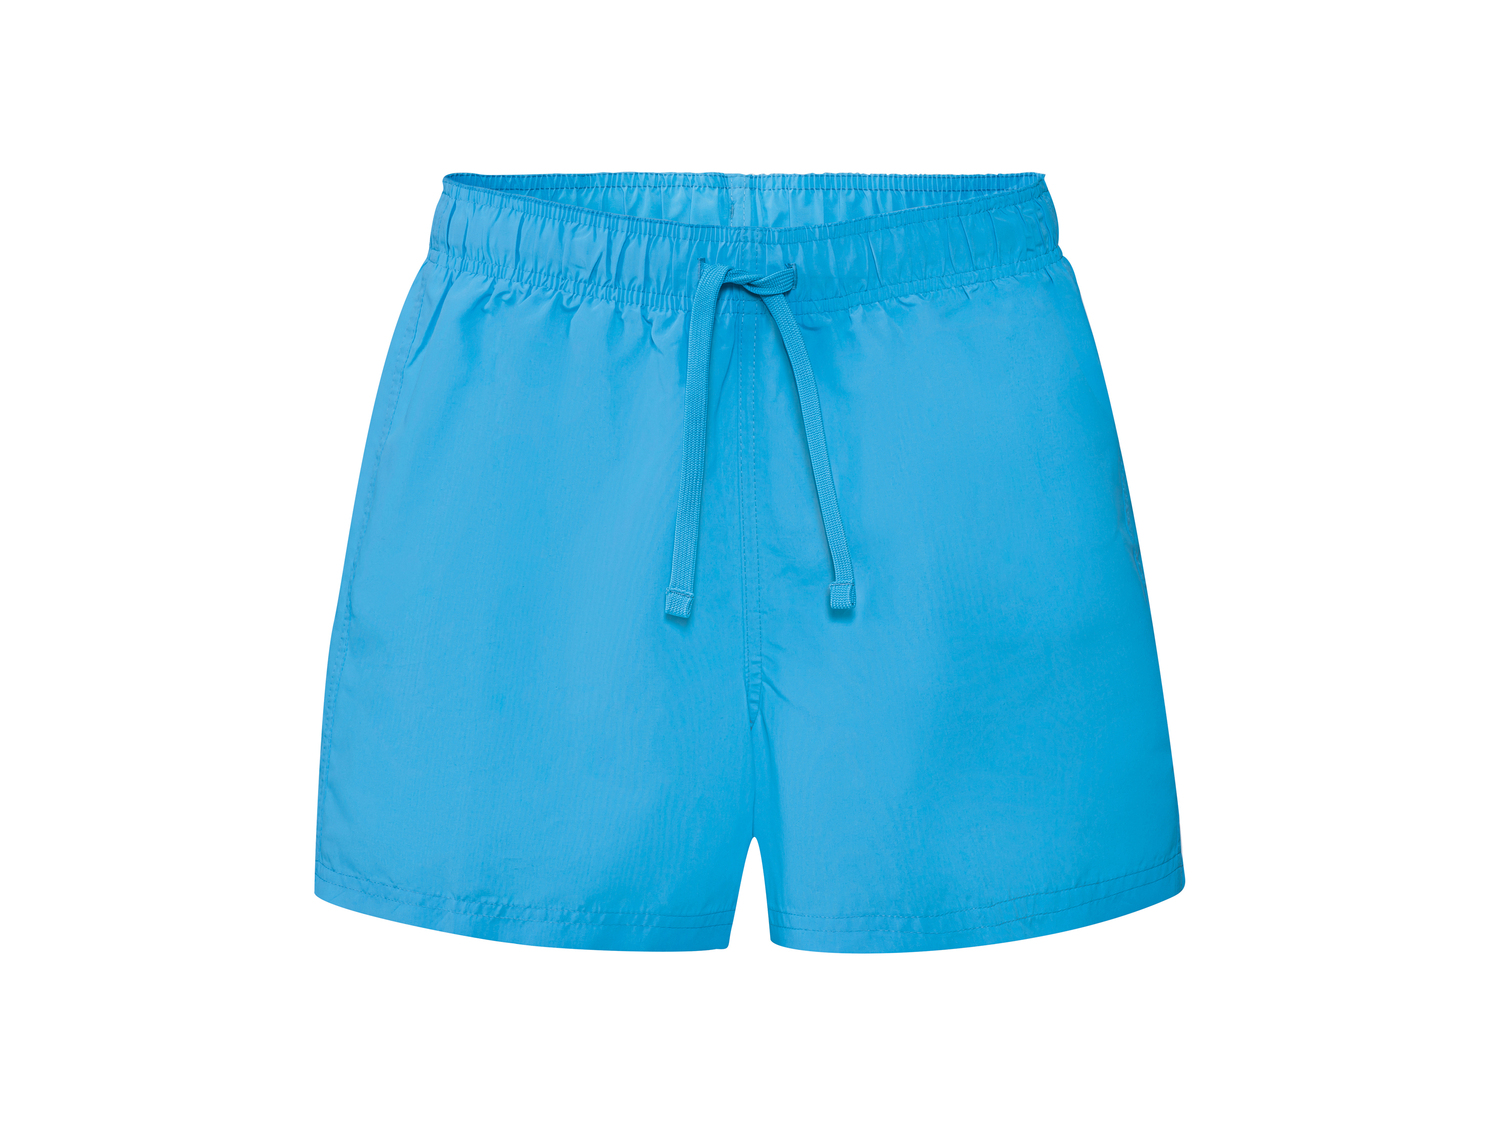 Shorts mare da uomo Livergy, prezzo 4.99 € 
Misure: S-XL
Taglie disponibili

Caratteristiche ...